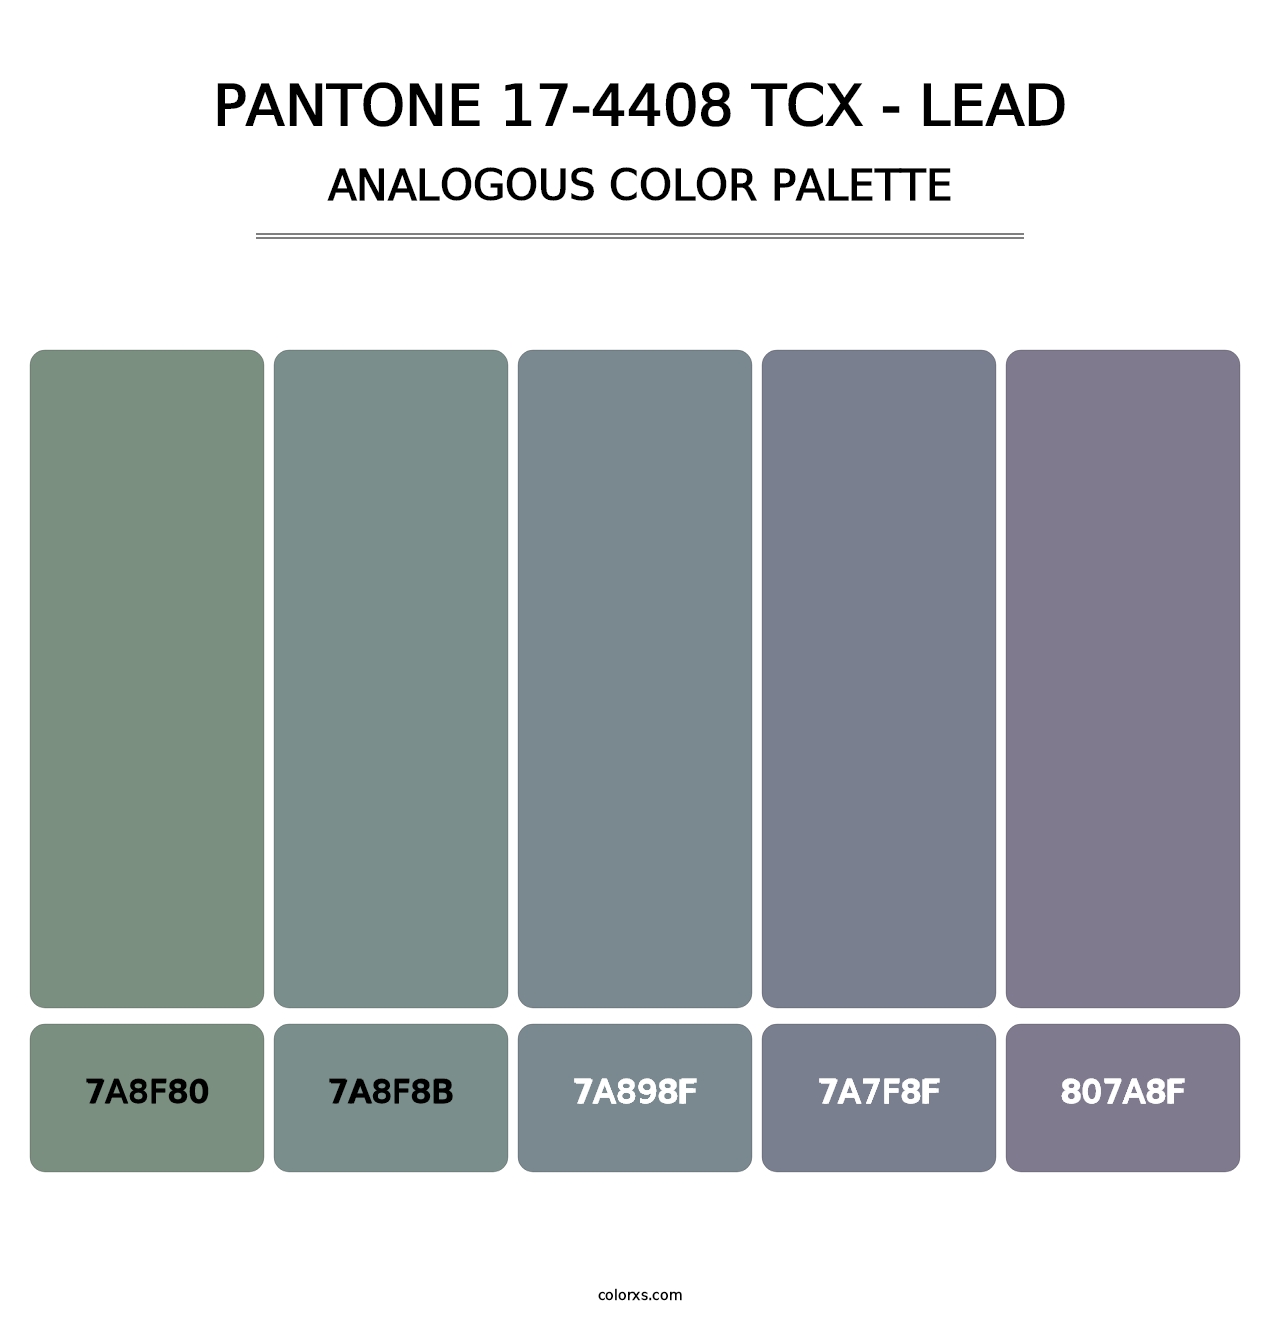 PANTONE 17-4408 TCX - Lead - Analogous Color Palette